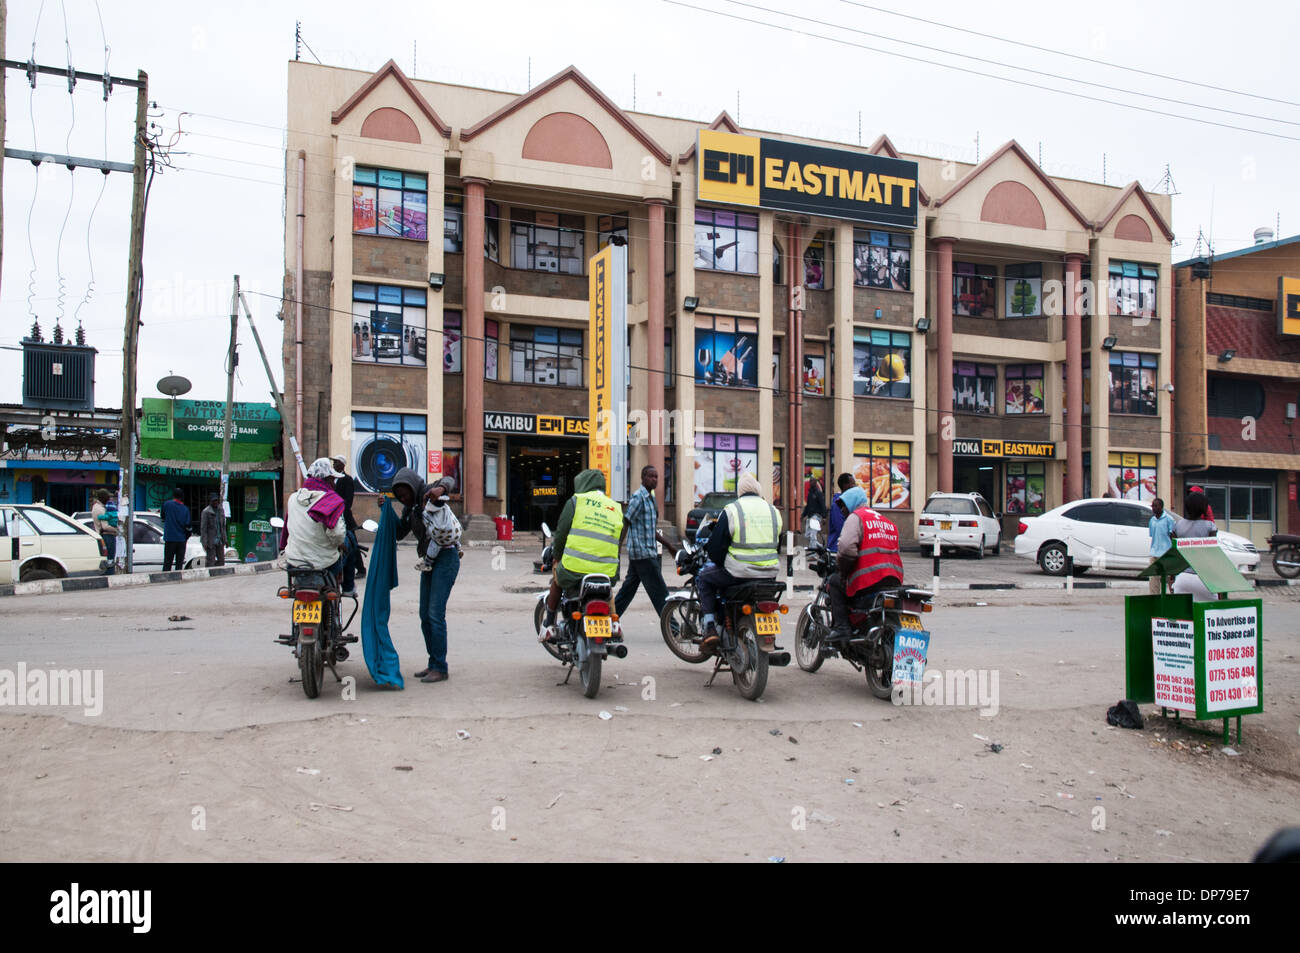 Les clients attendent des taxis motos) Eastmatt au supermarché sur la route de Nairobi Kenya Afrique Namanga Kaijado Banque D'Images